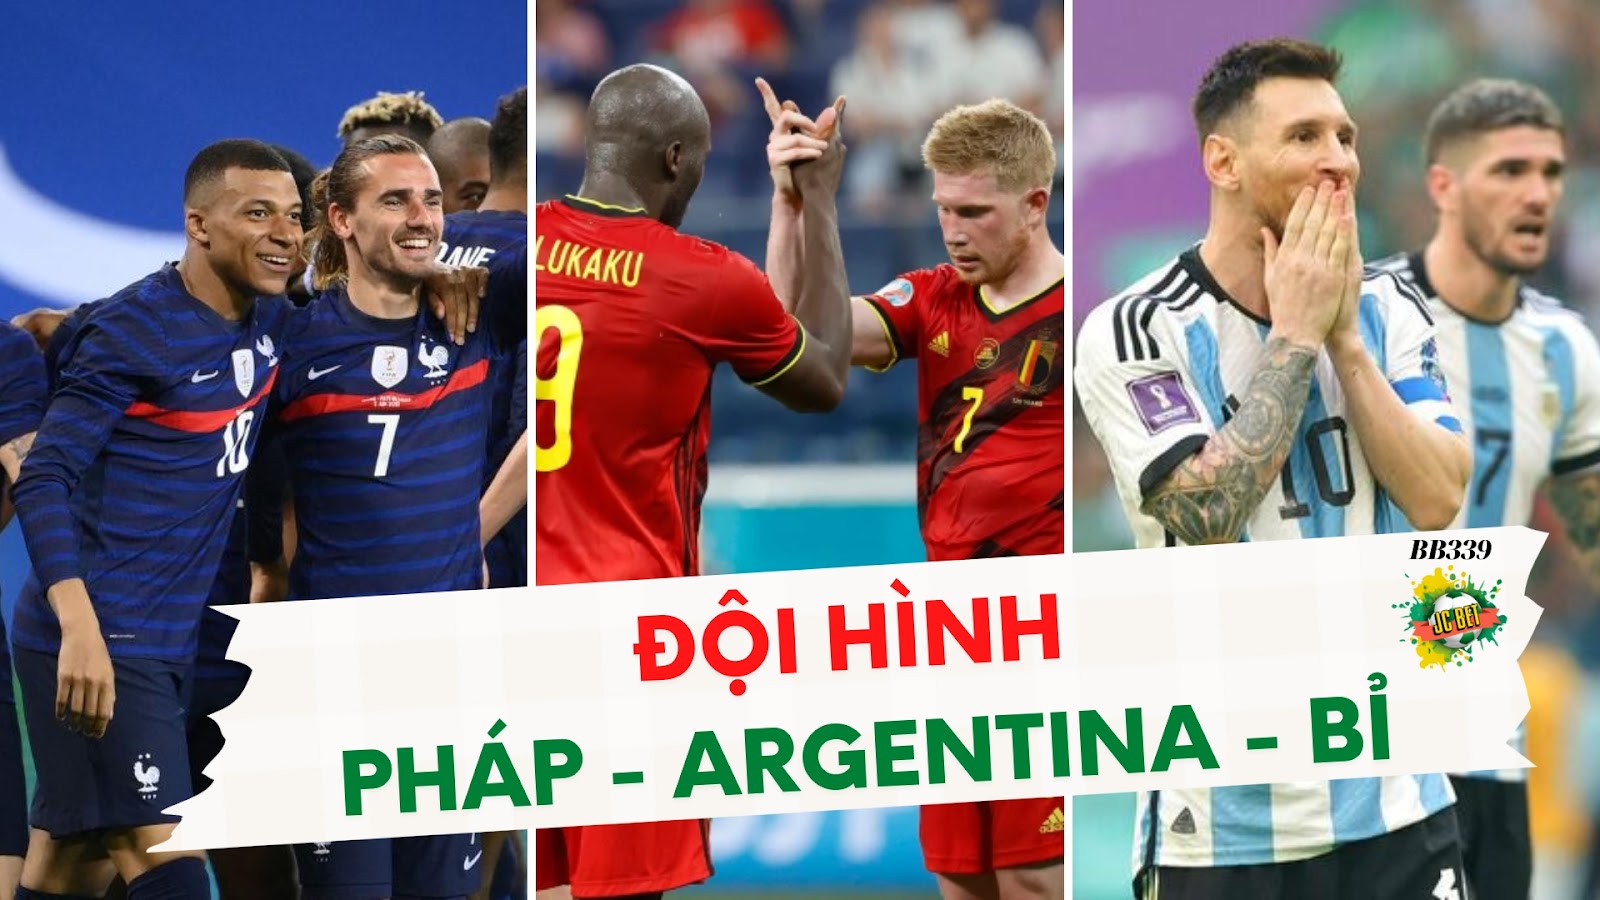 Đội hình 3 đội Pháp - Argentina - Bỉ tại World Cup 2022